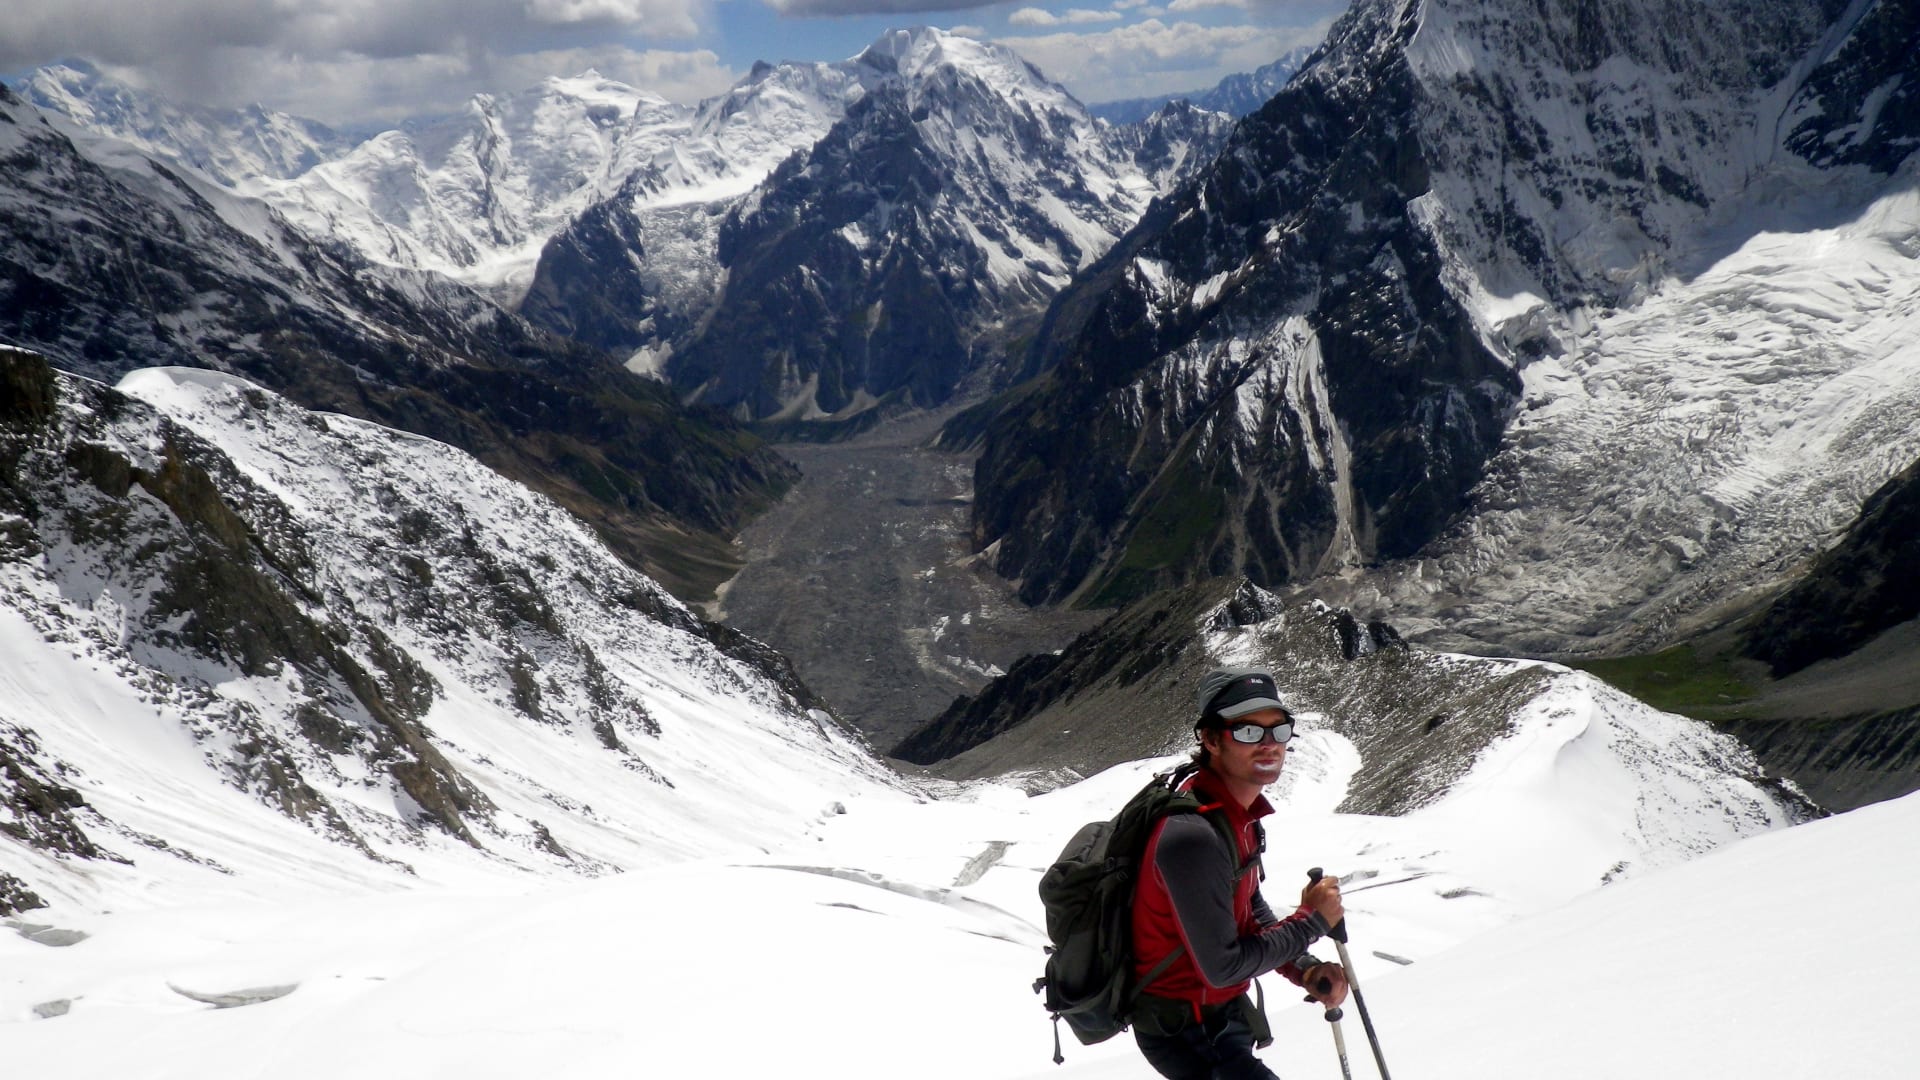 أعلى قمة غير متسلقة في العالم.. ما قصة جبل "موتشو تشيش" في باكستان؟